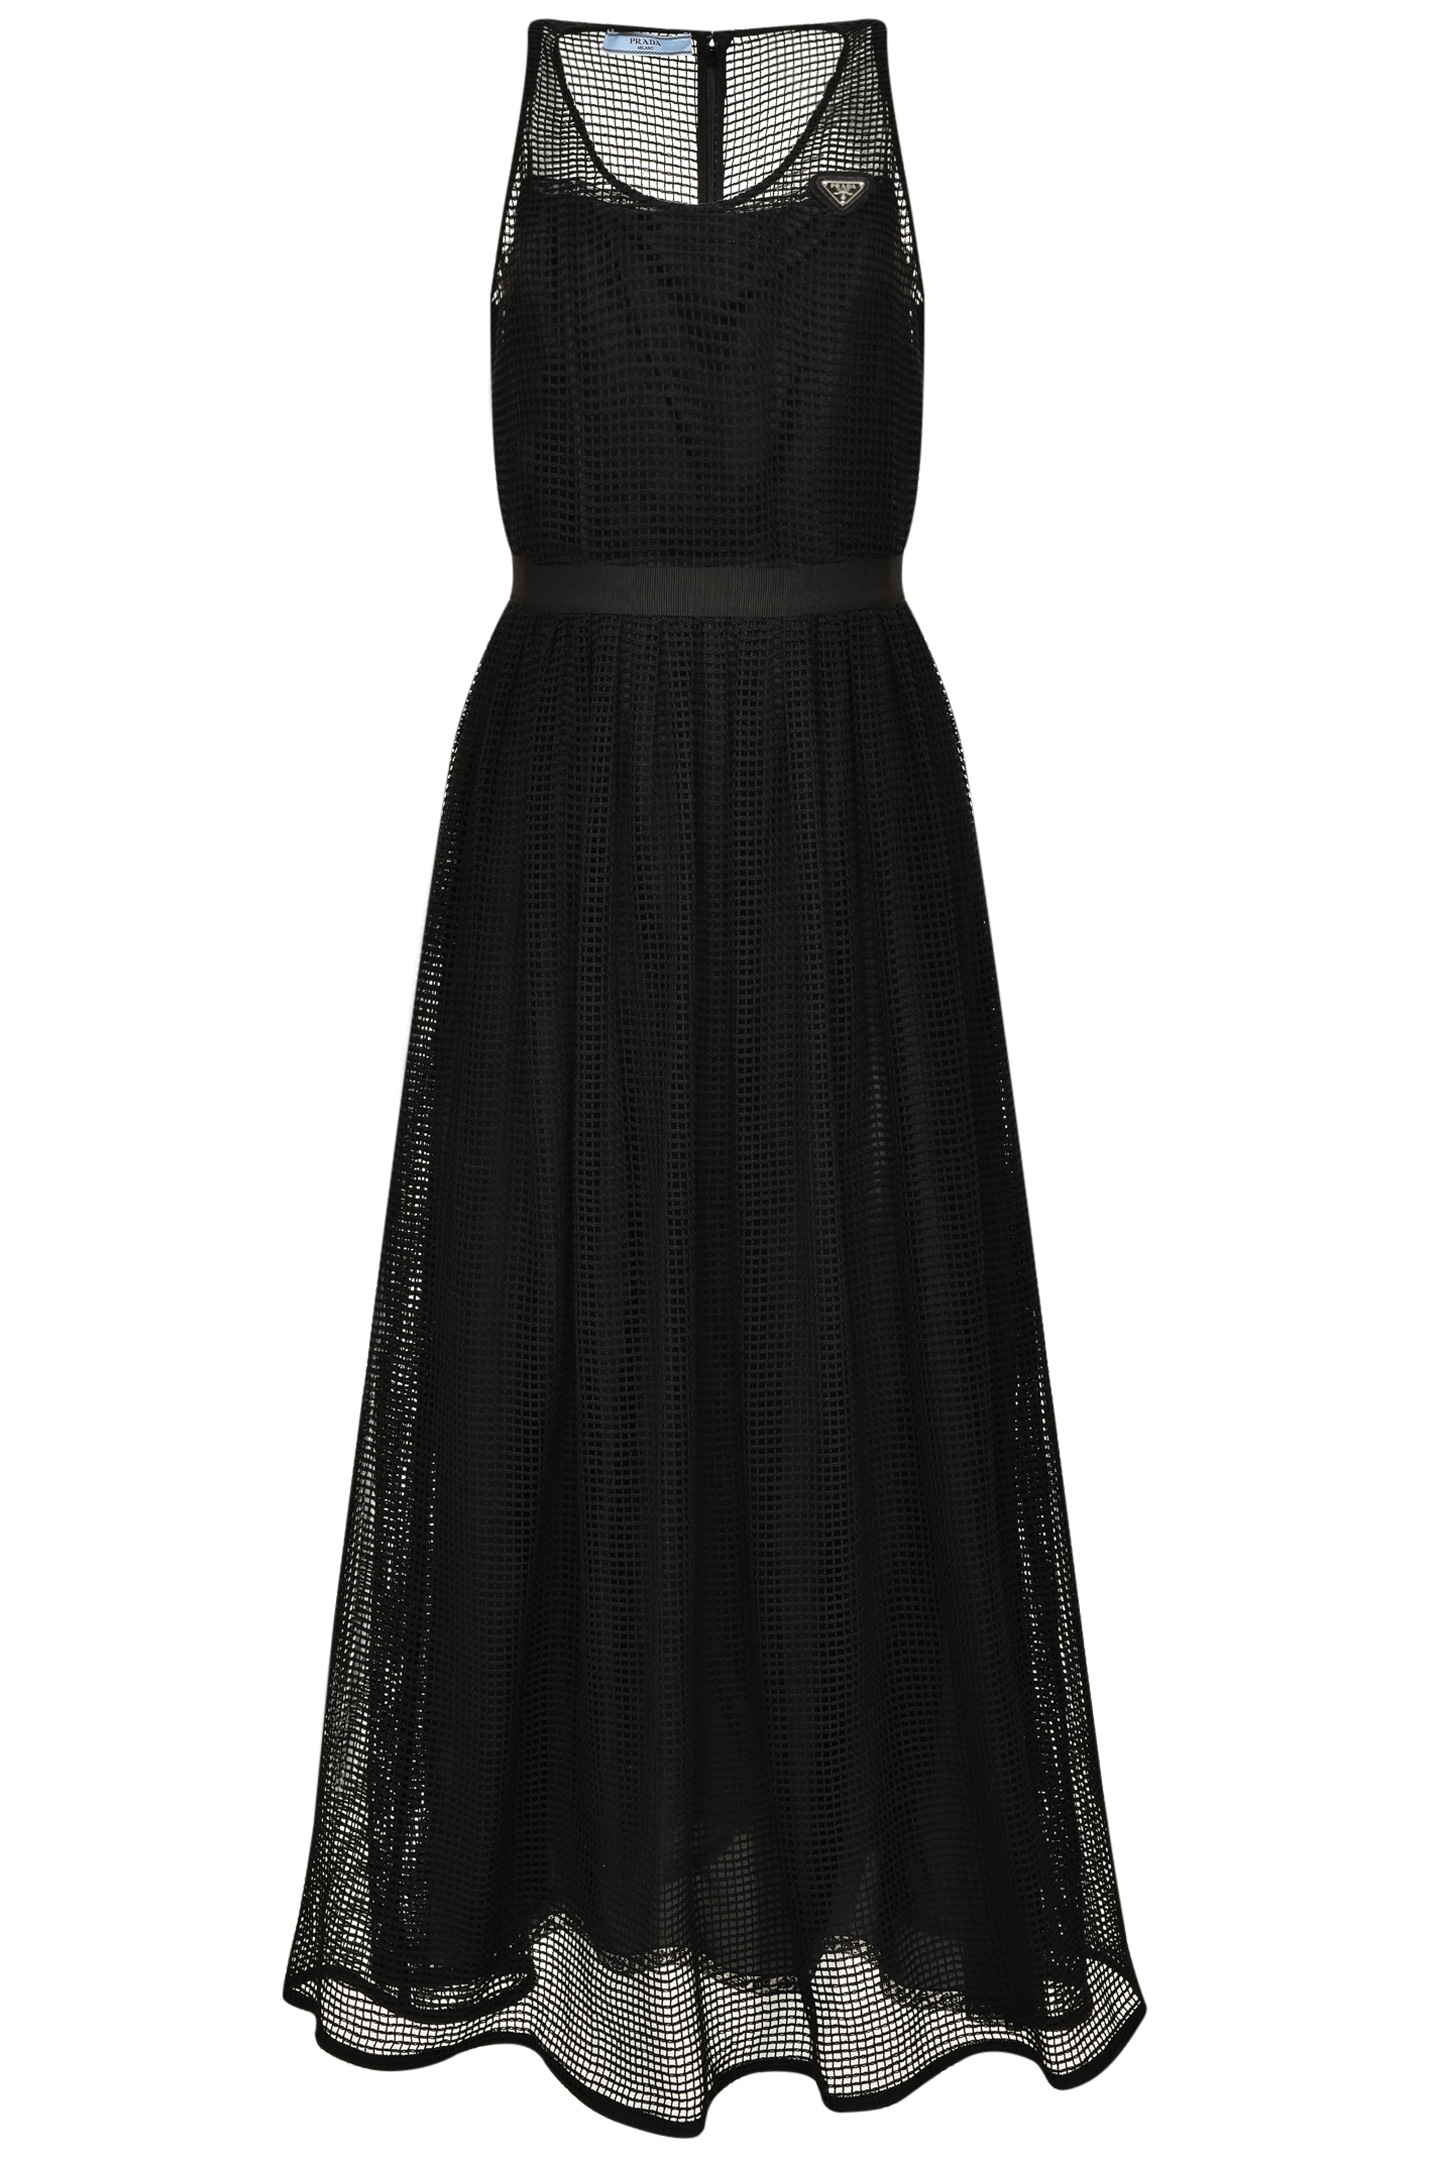 Платье PRADA P3G49L 10JY, цвет: Черный, Женский